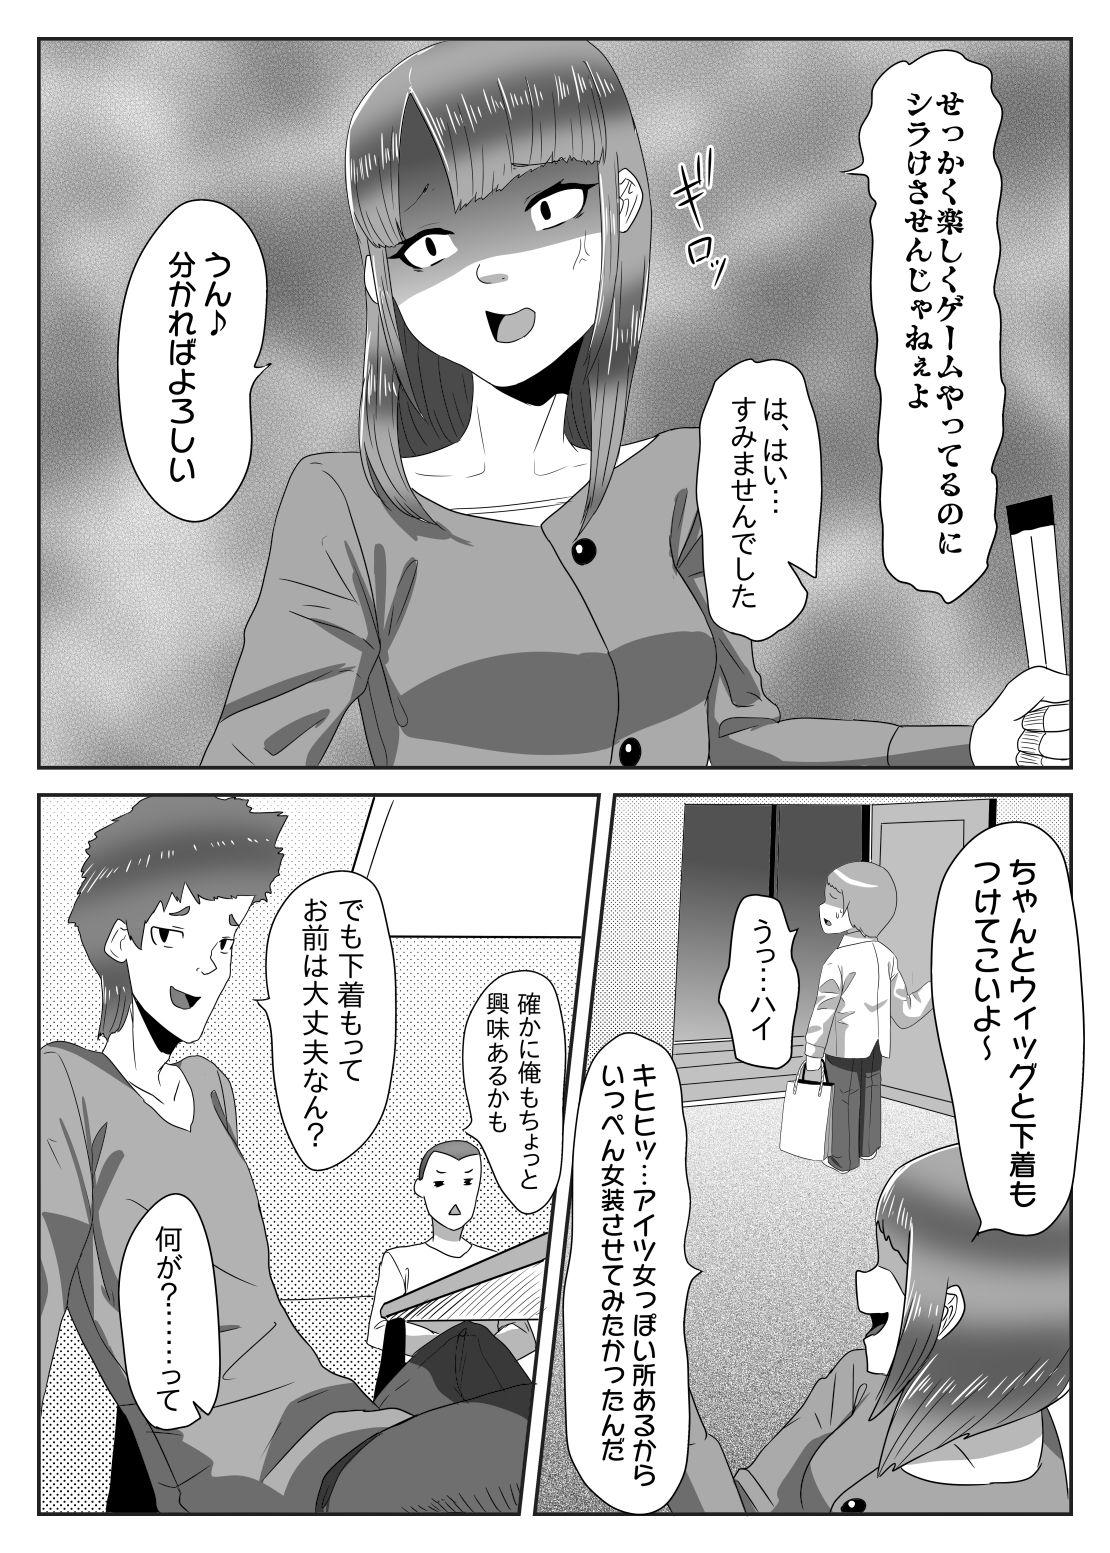 Punish Batsu gēmu de josō sanpo sa se rarete itara ikemen futanari musume ni tasuke raremashita - Original Actress - Page 5